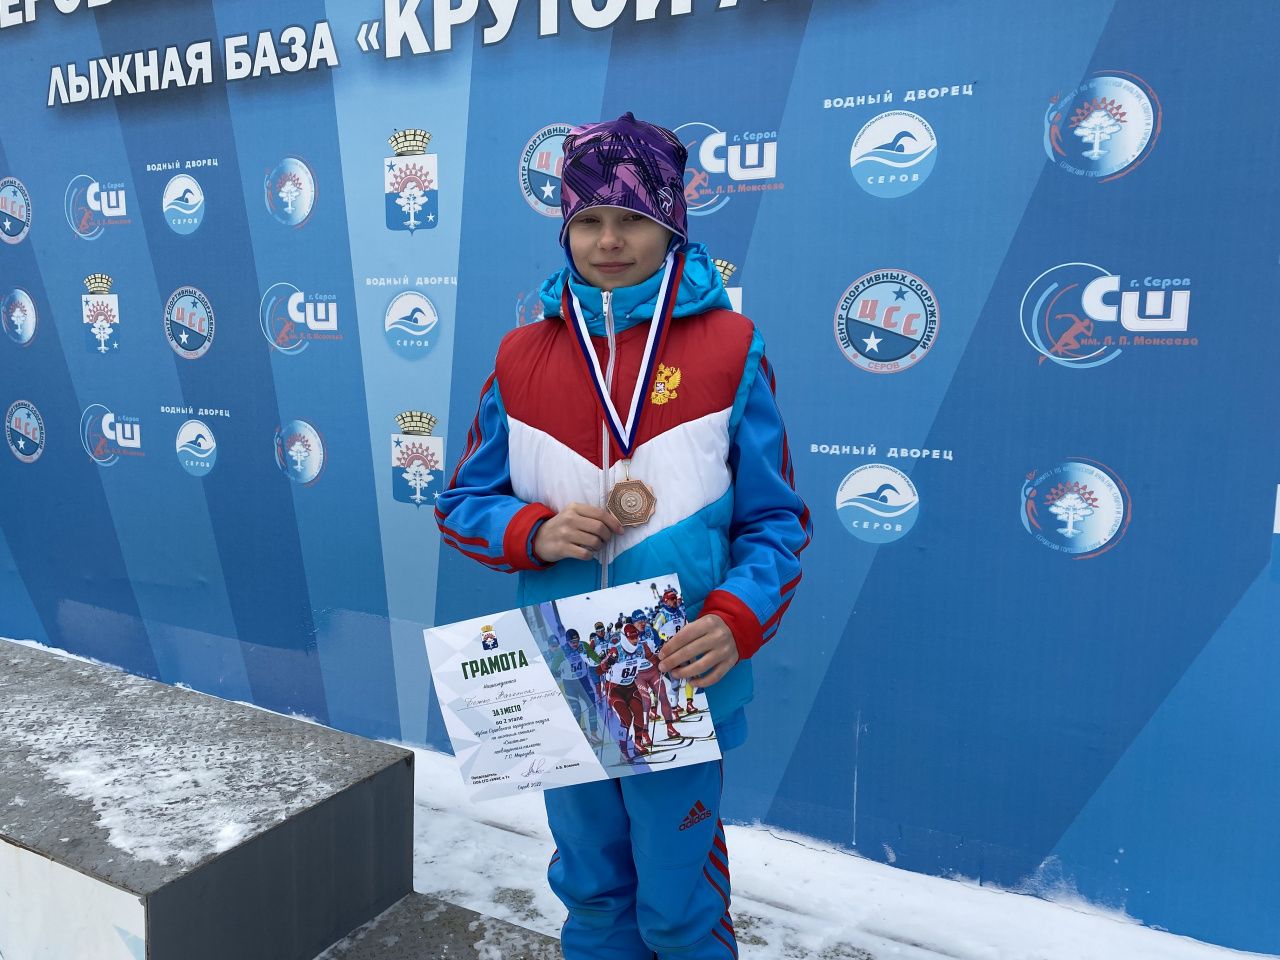 В Серове прошли соревнования по скиатлону. Лыжный забег приурочили памяти Геннадия Морозова